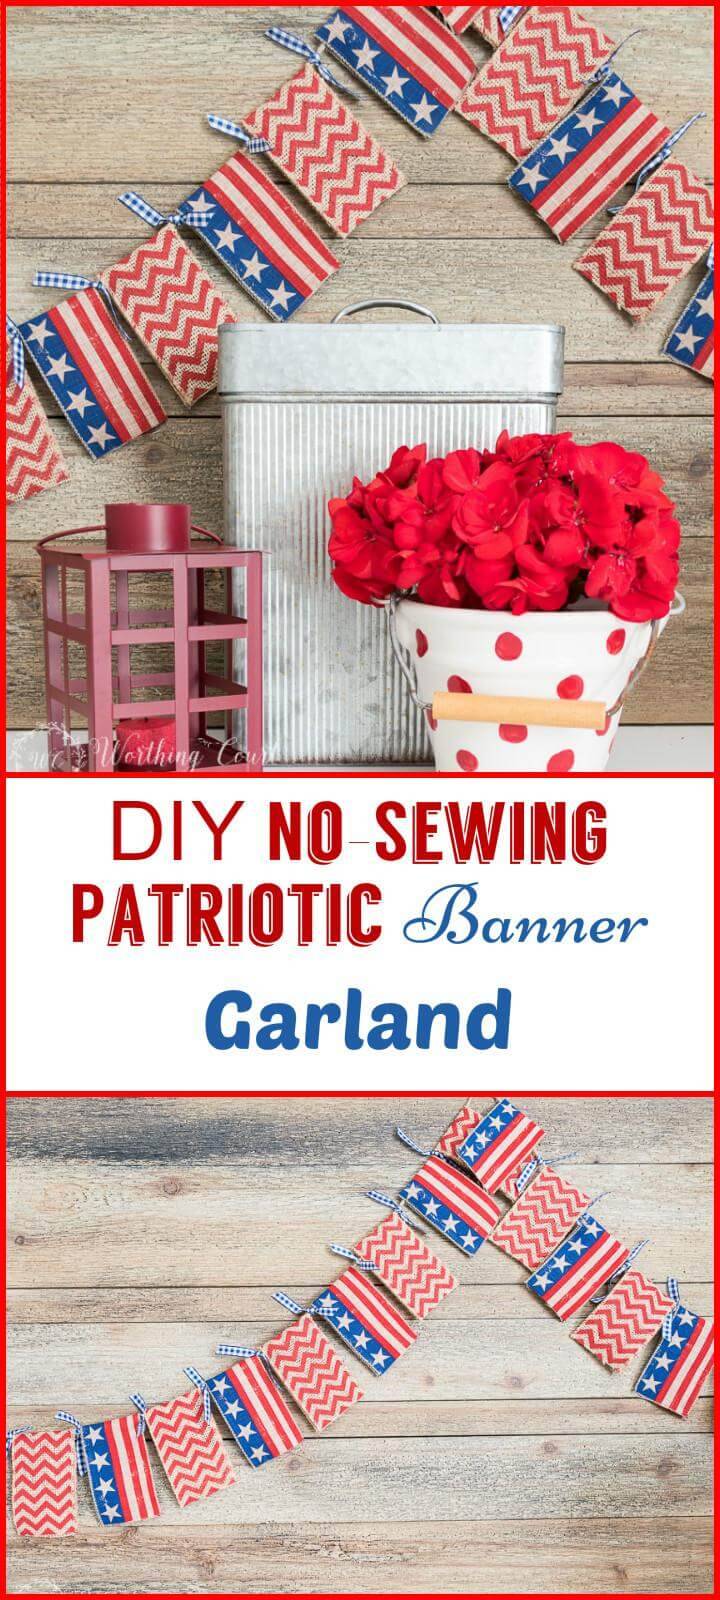 DIY no-sewing patriotic banner garland